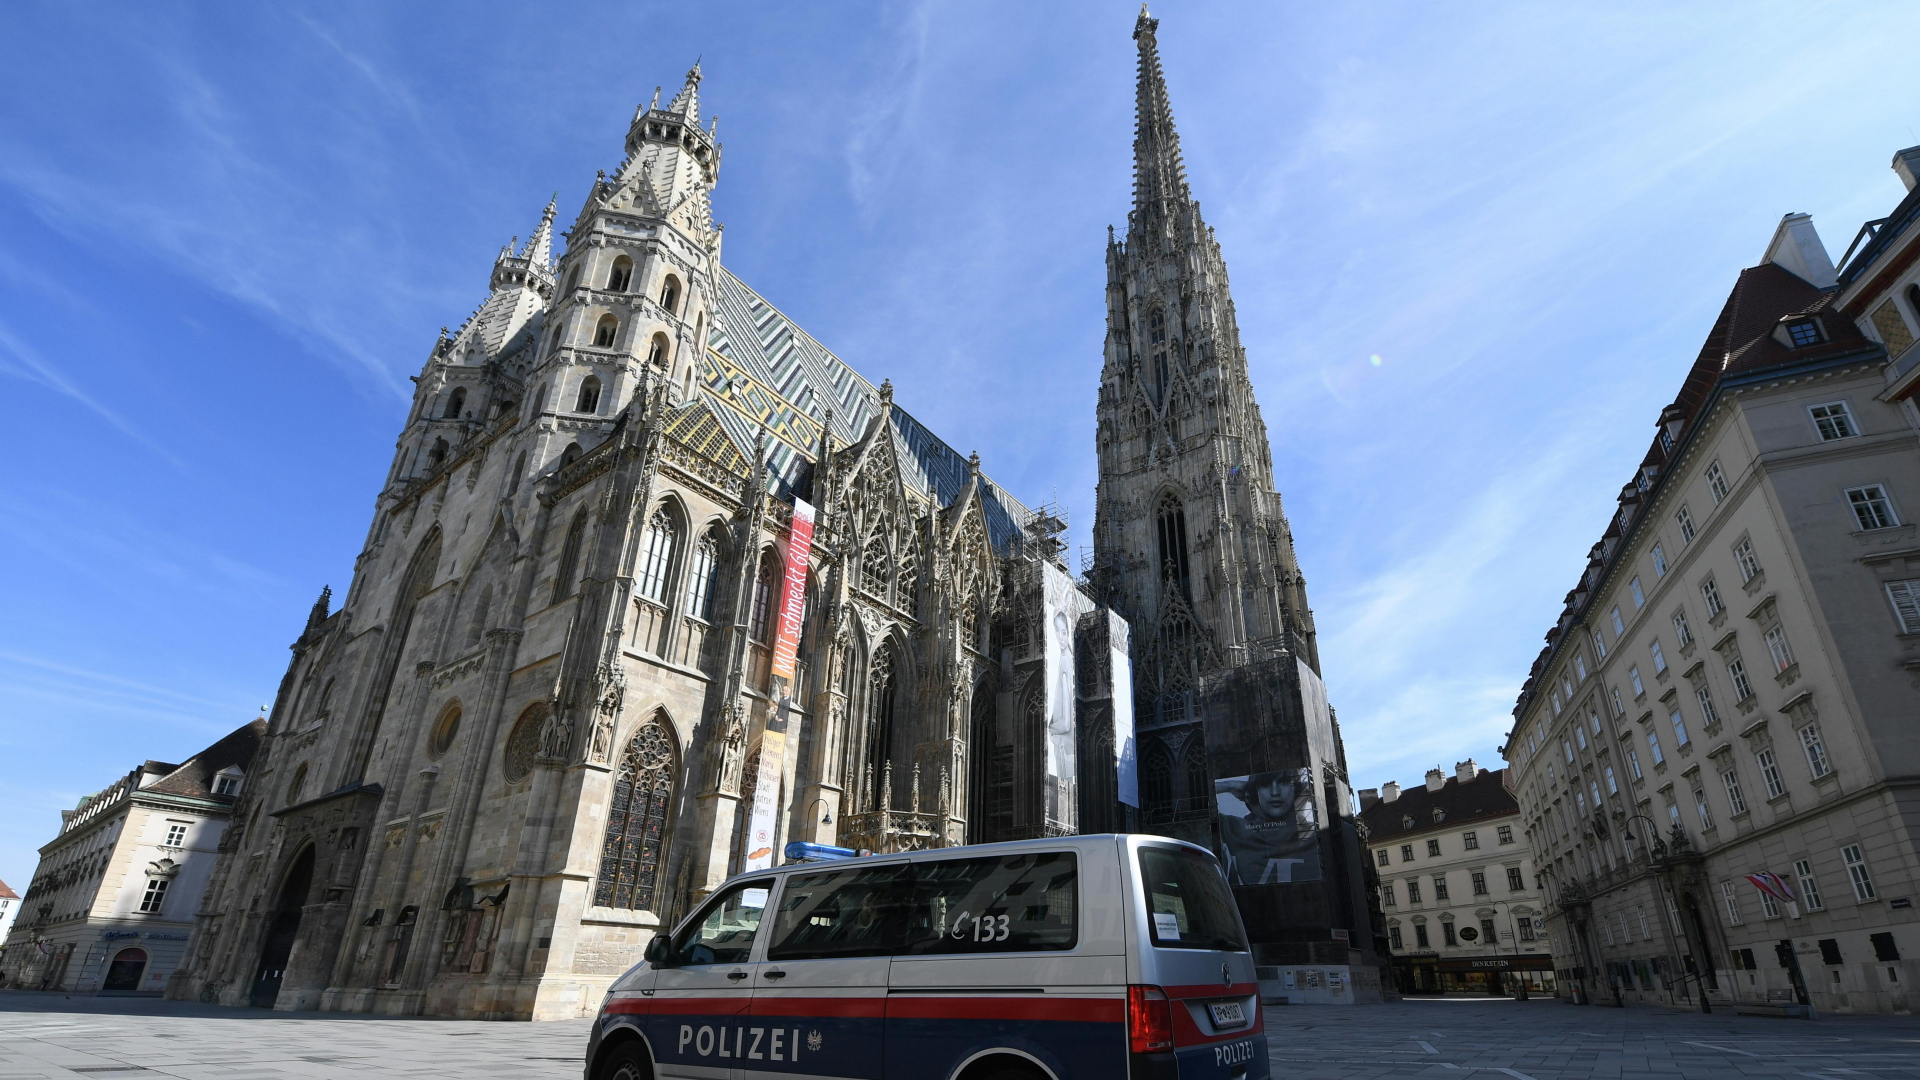 Ausgangssperre in Wien - Polizei überwacht die leeren Straßen | dpa